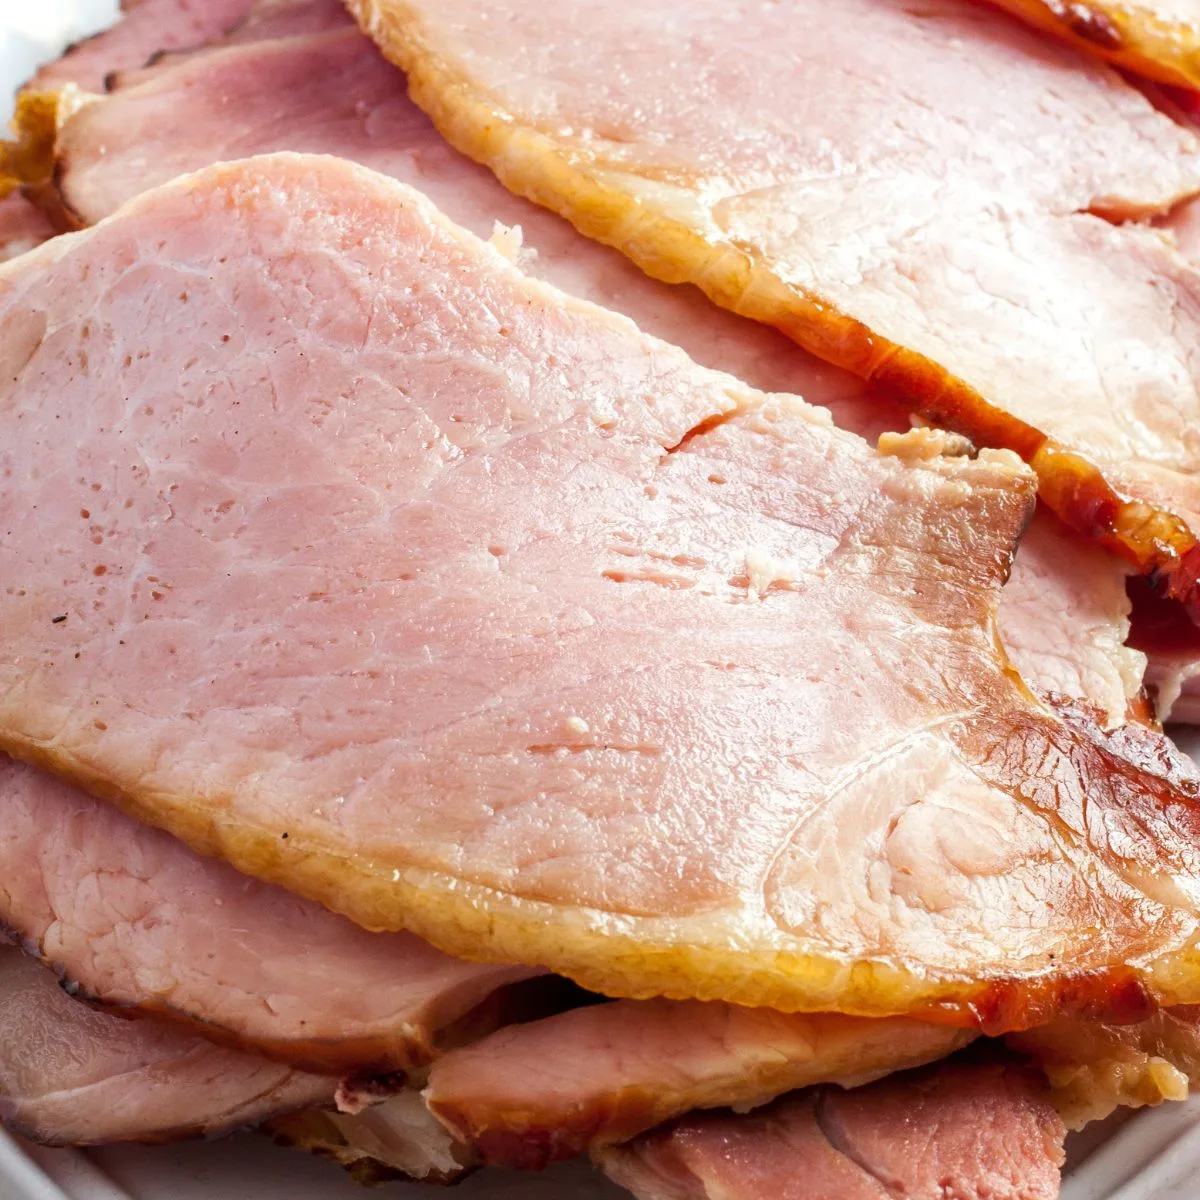 sliced ham on white plate - ham leftovers